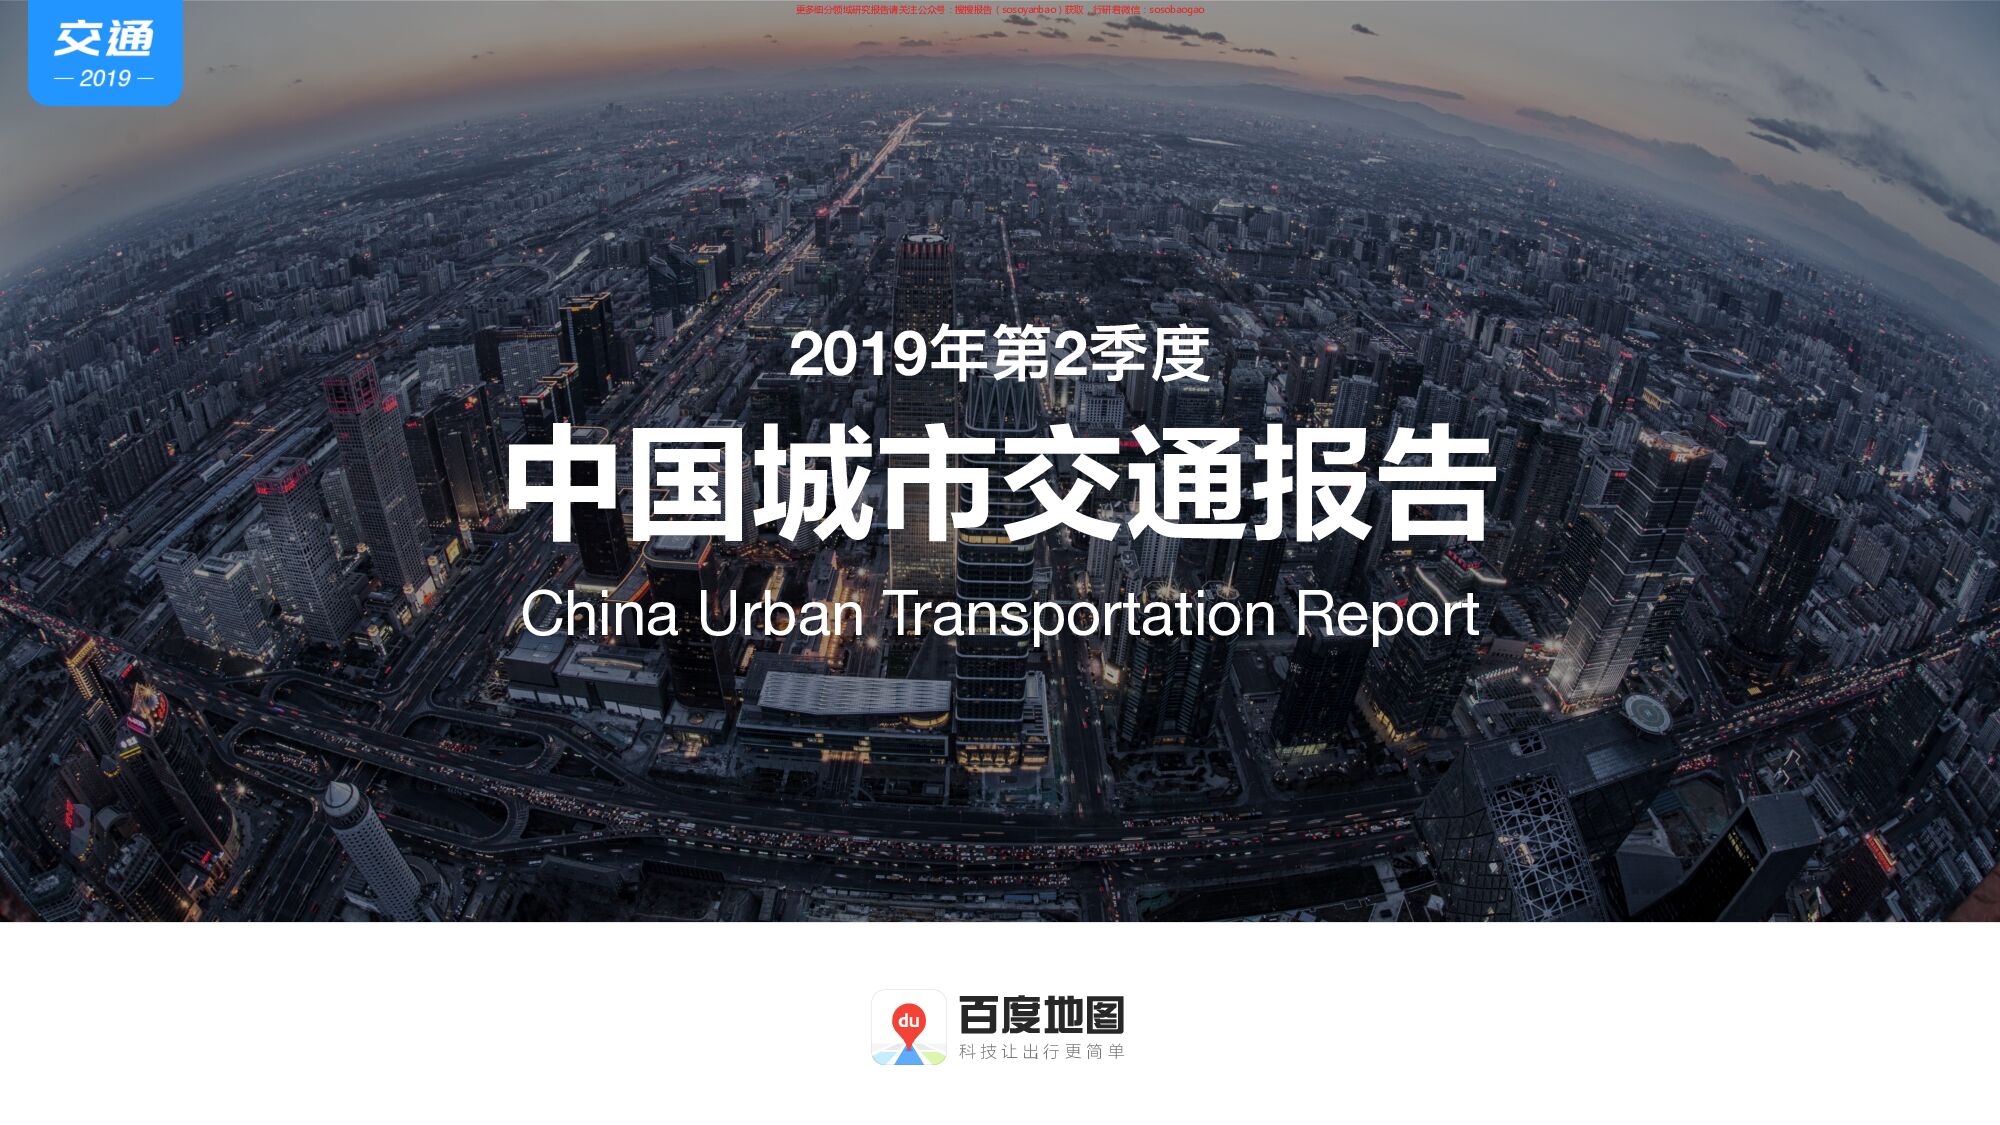 2019年第2季度中国城市交通报告